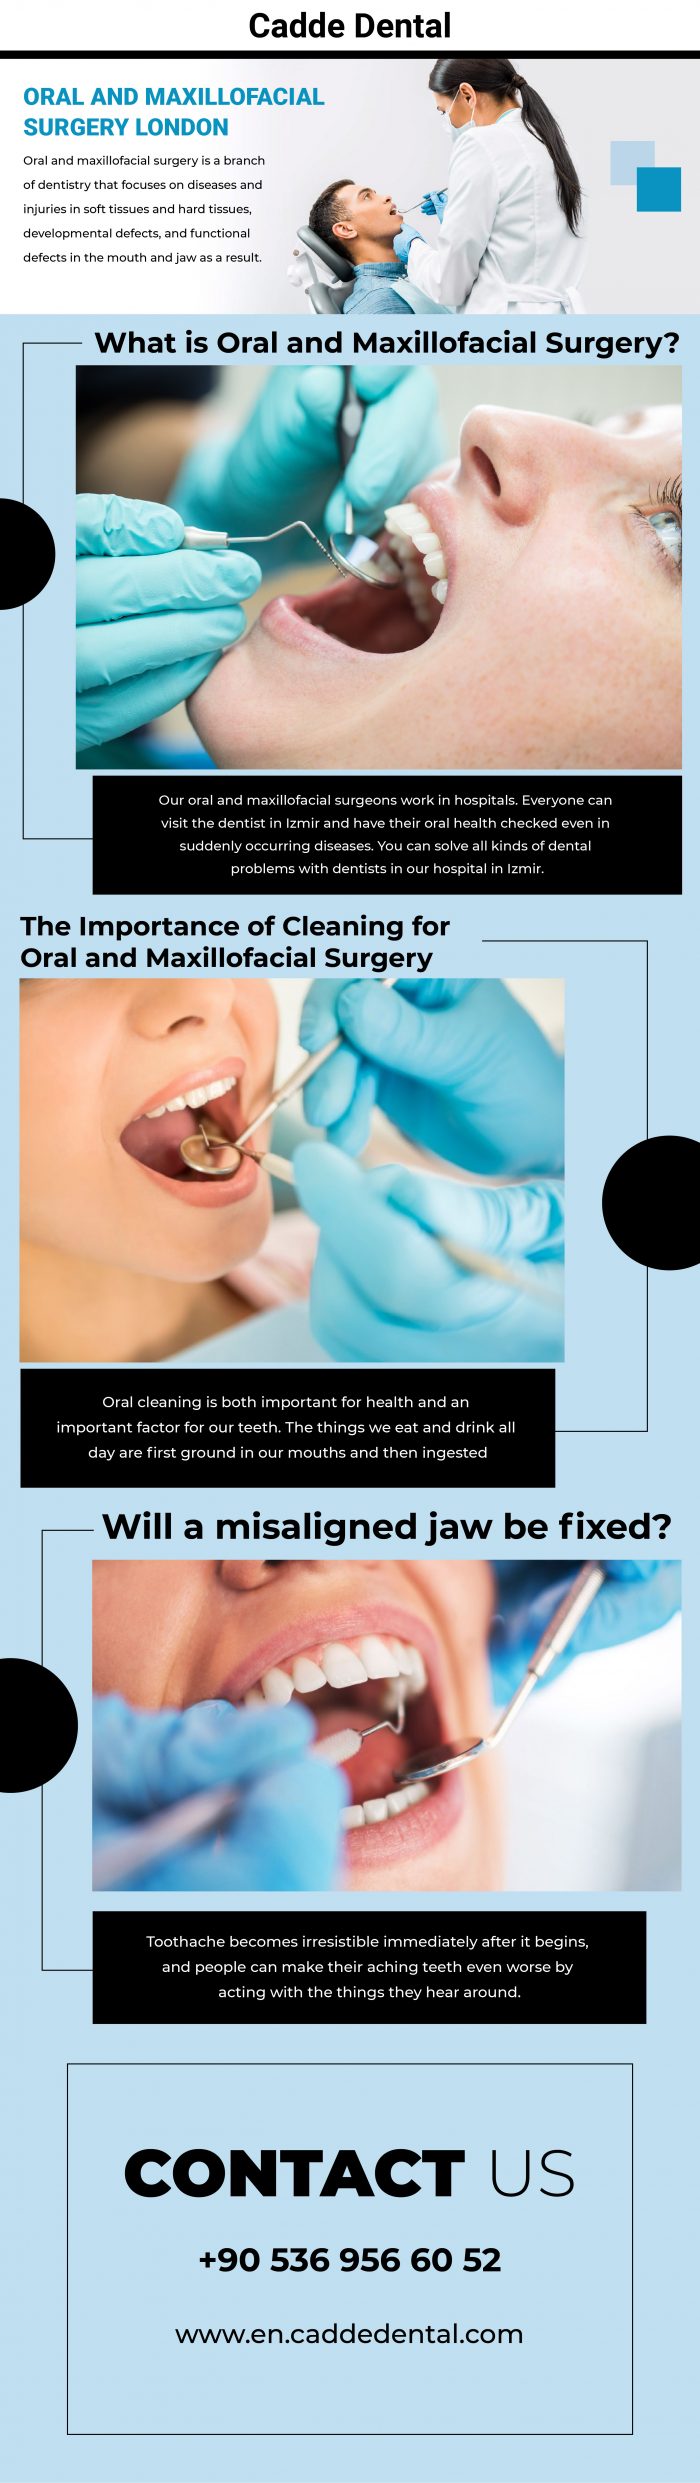 Oral and Maxillofacial Surgery London – Cadde Dental